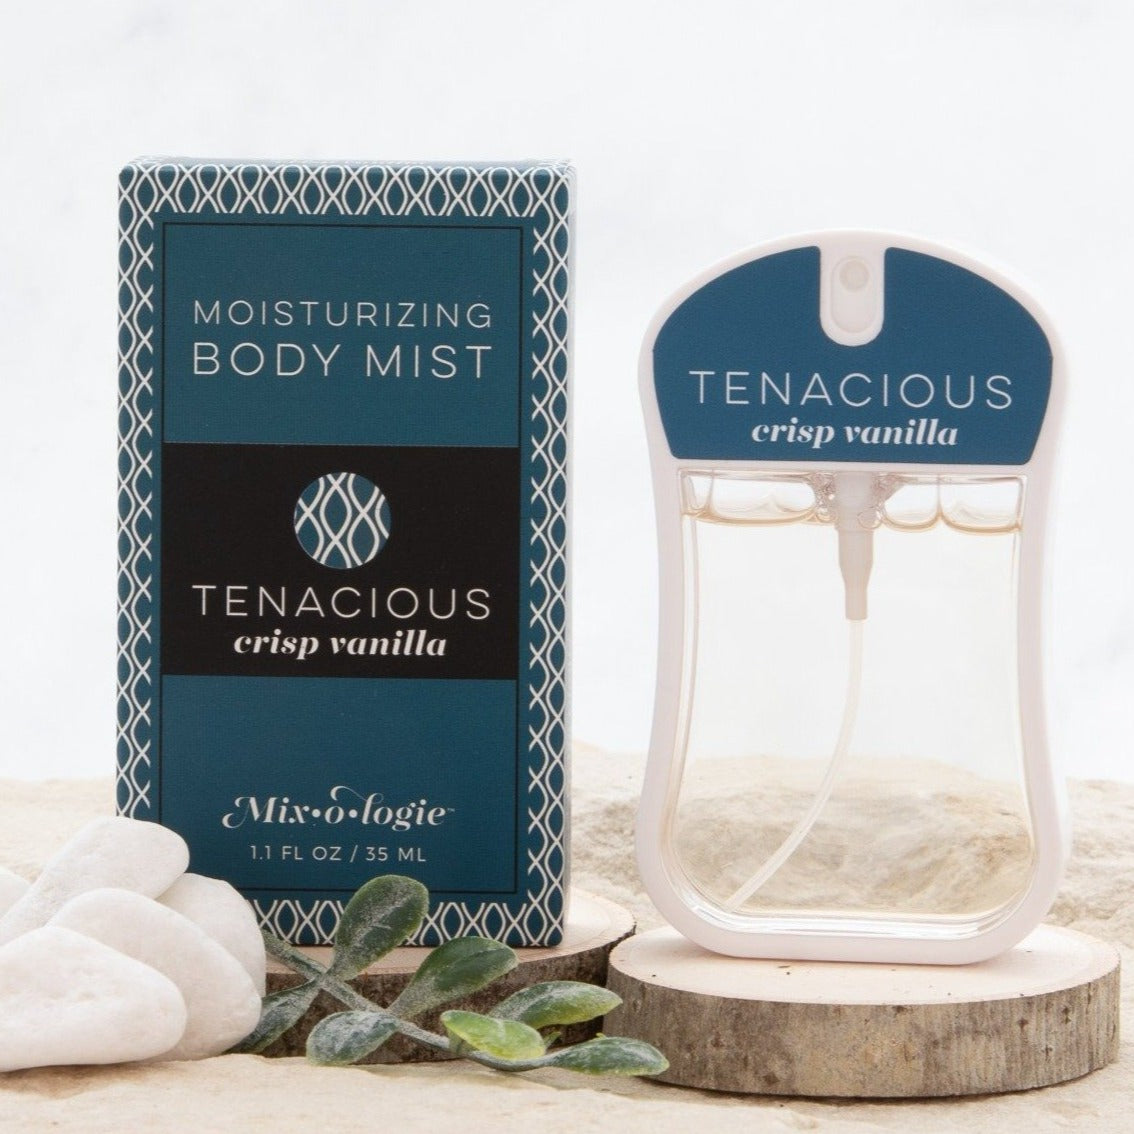 Tenacious (crisp vanilla) - Moisturizing Body Mist